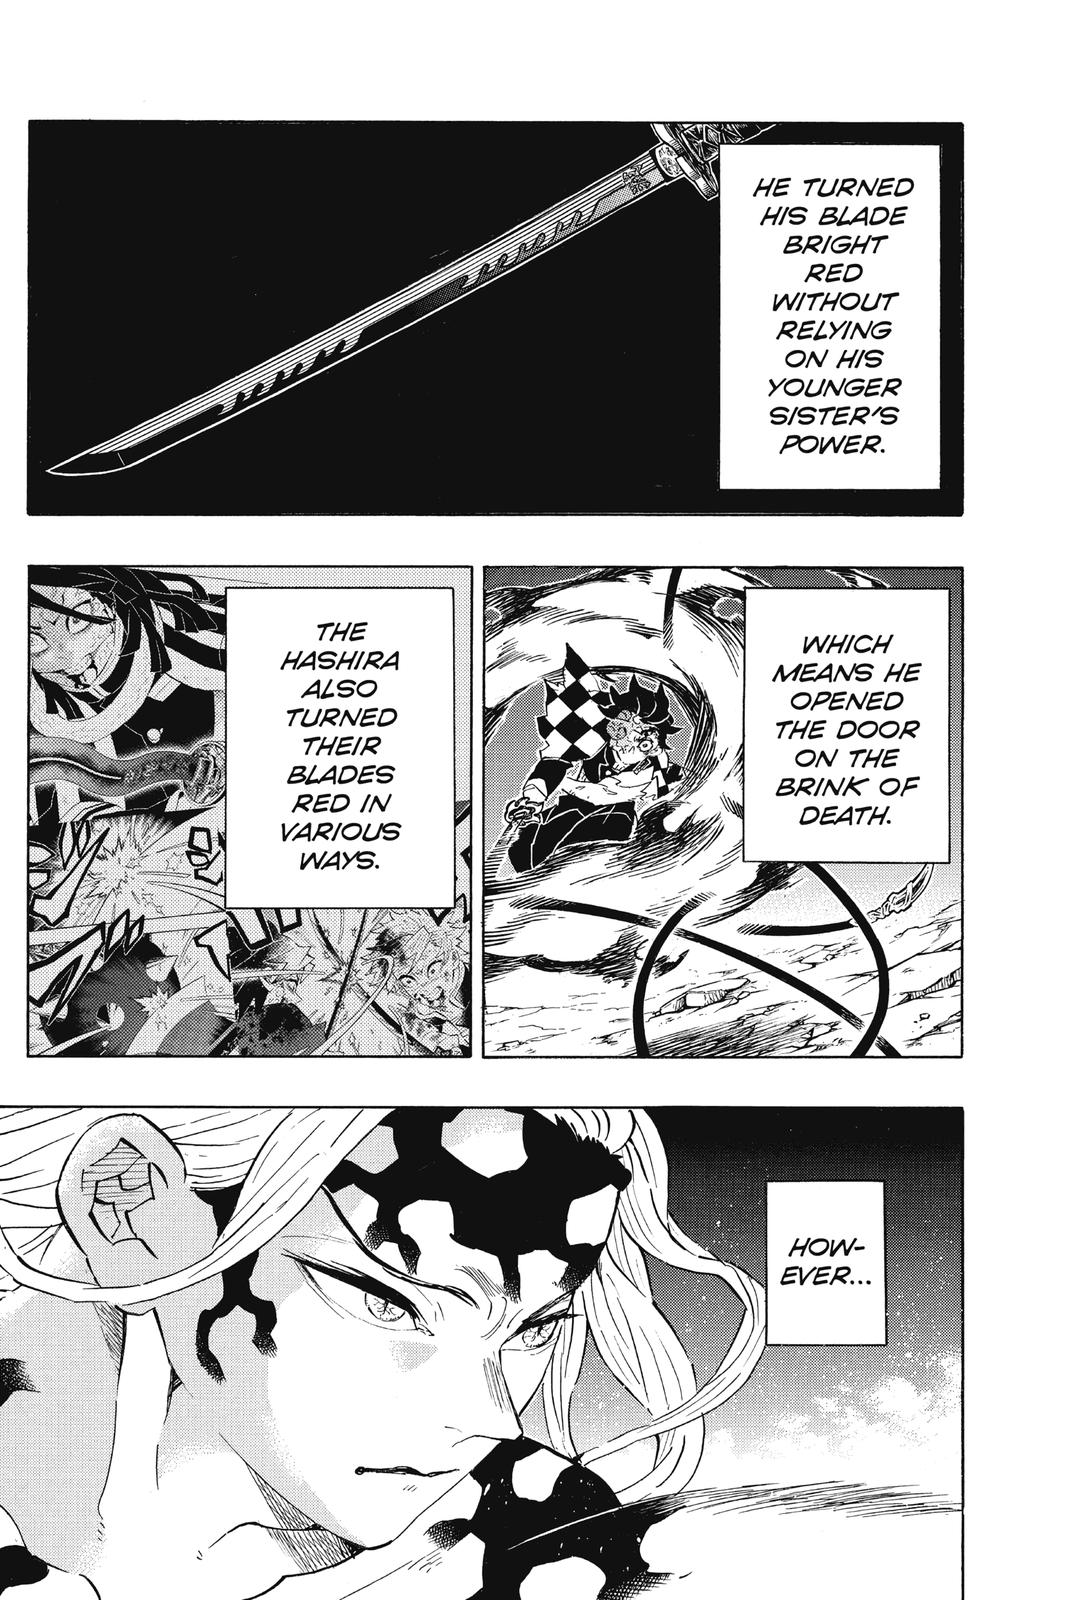 Demon Slayer Manga Manga Chapter - 193 - image 4